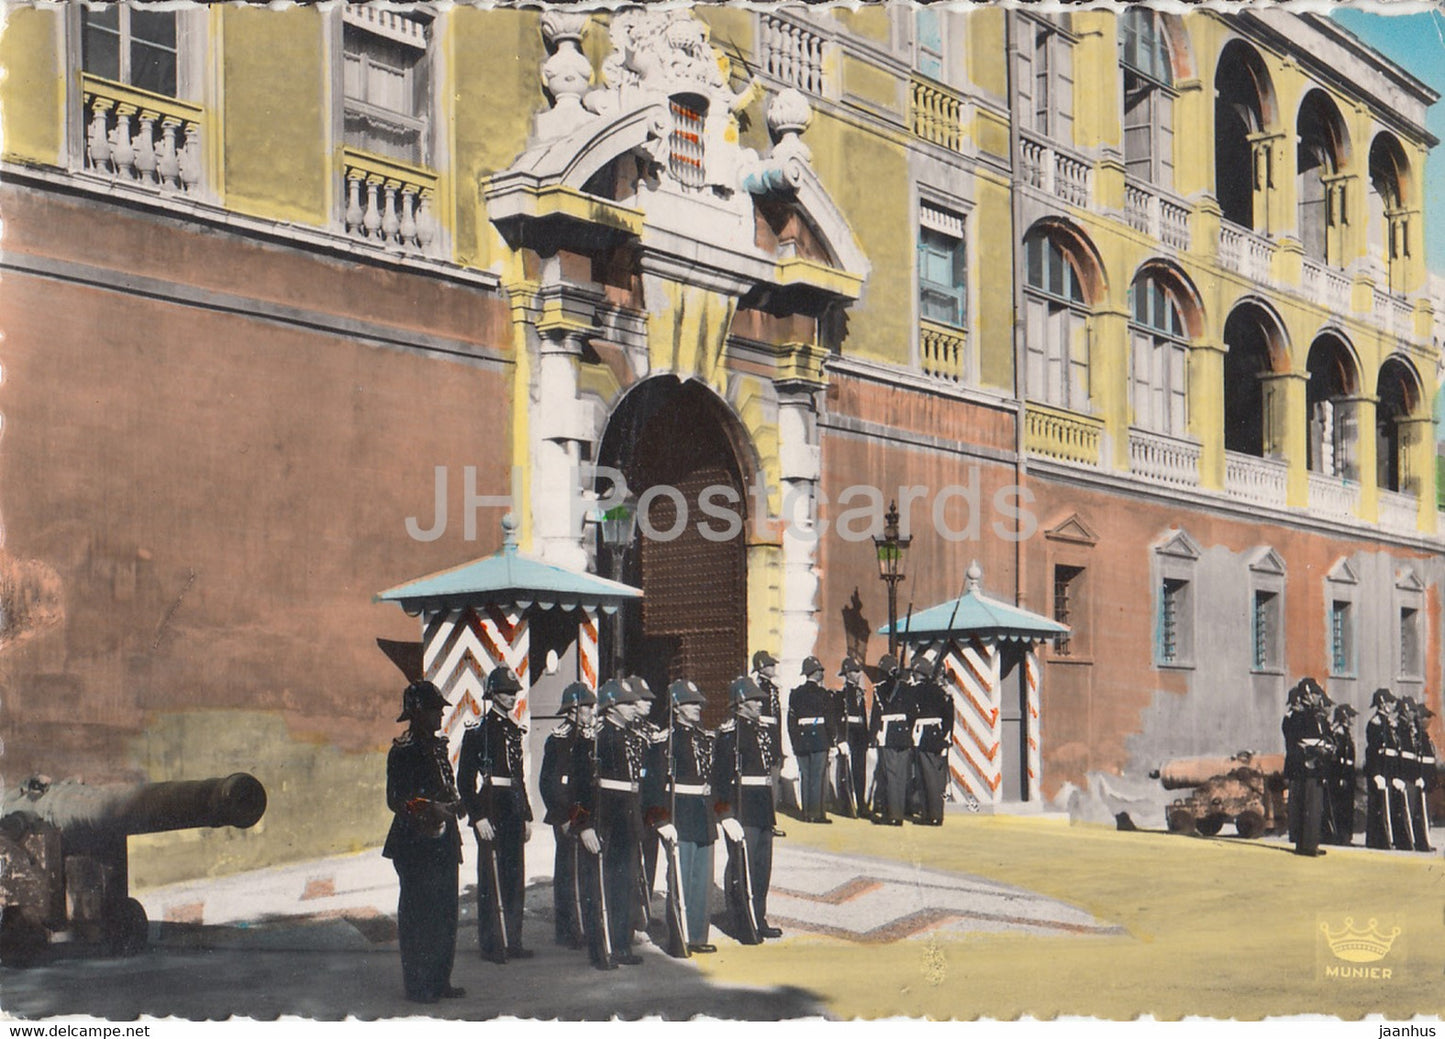 La releve de la Garde des Carabiniers devant le Palais de SAS le Prince de Monaco - old postcard - 1953 - Monaco - used - JH Postcards